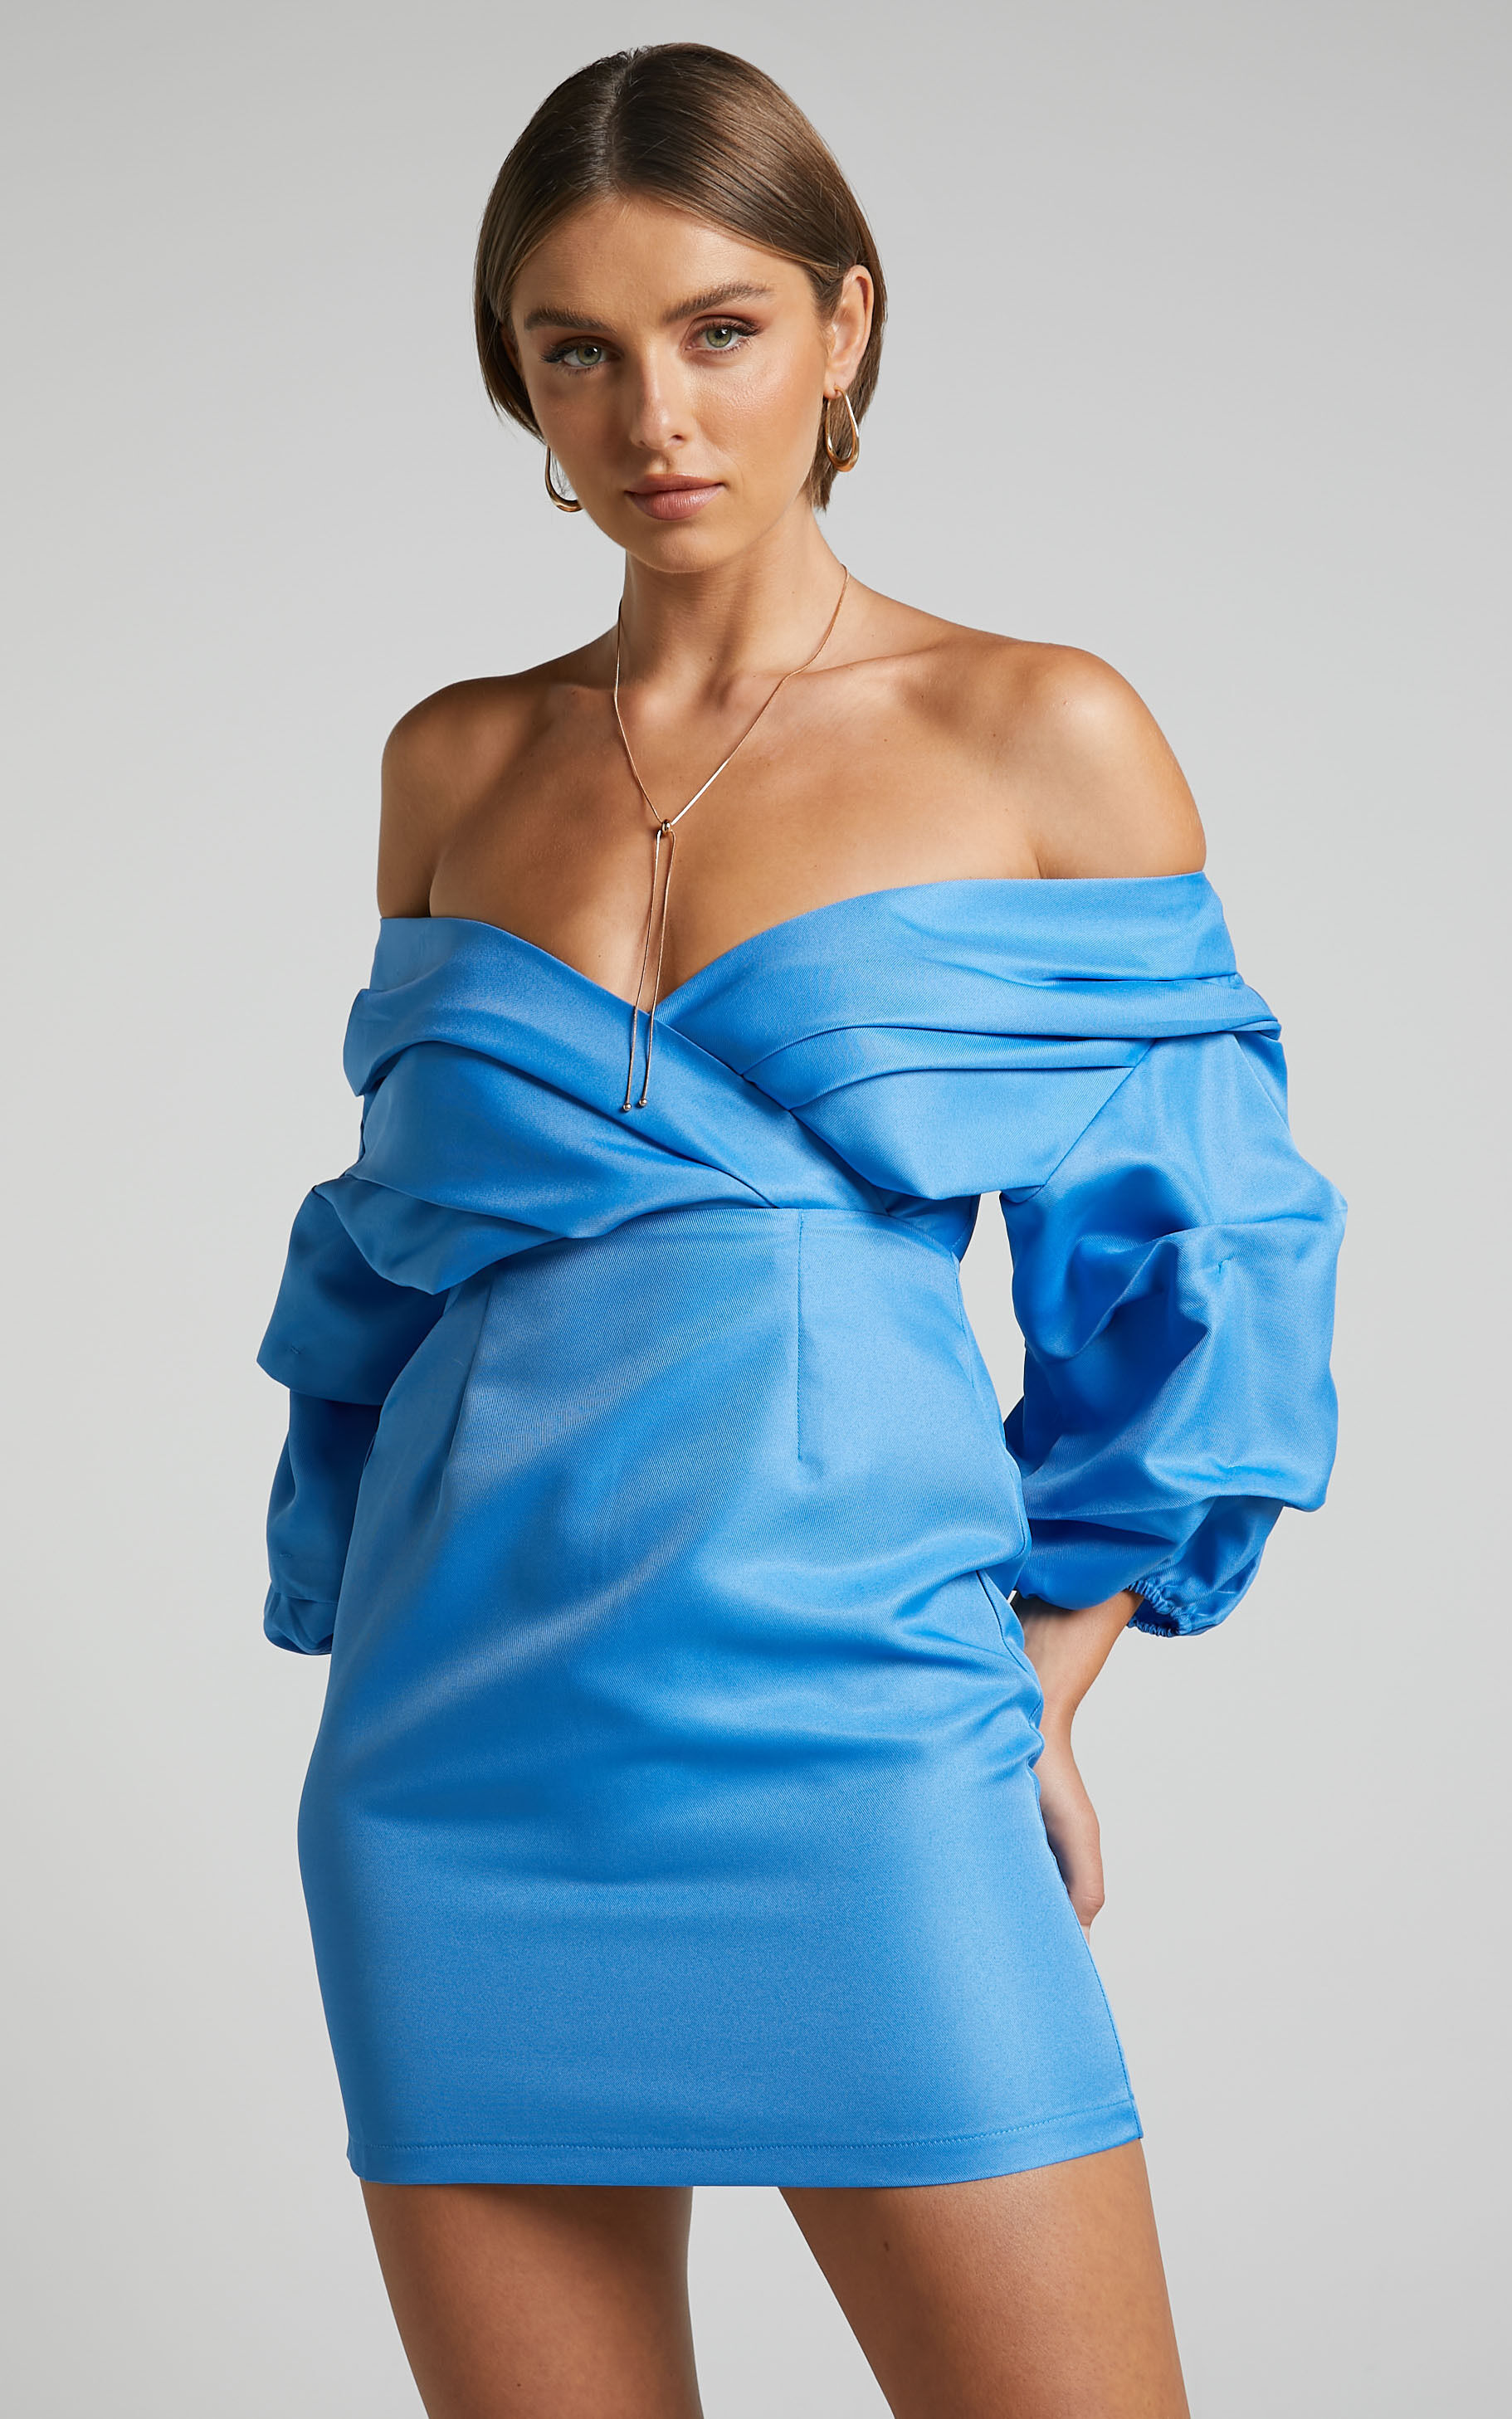 Anastasija Mini Dress - Off Shoulder V Neck Dress in Blue - 06, BLU1, super-hi-res image number null